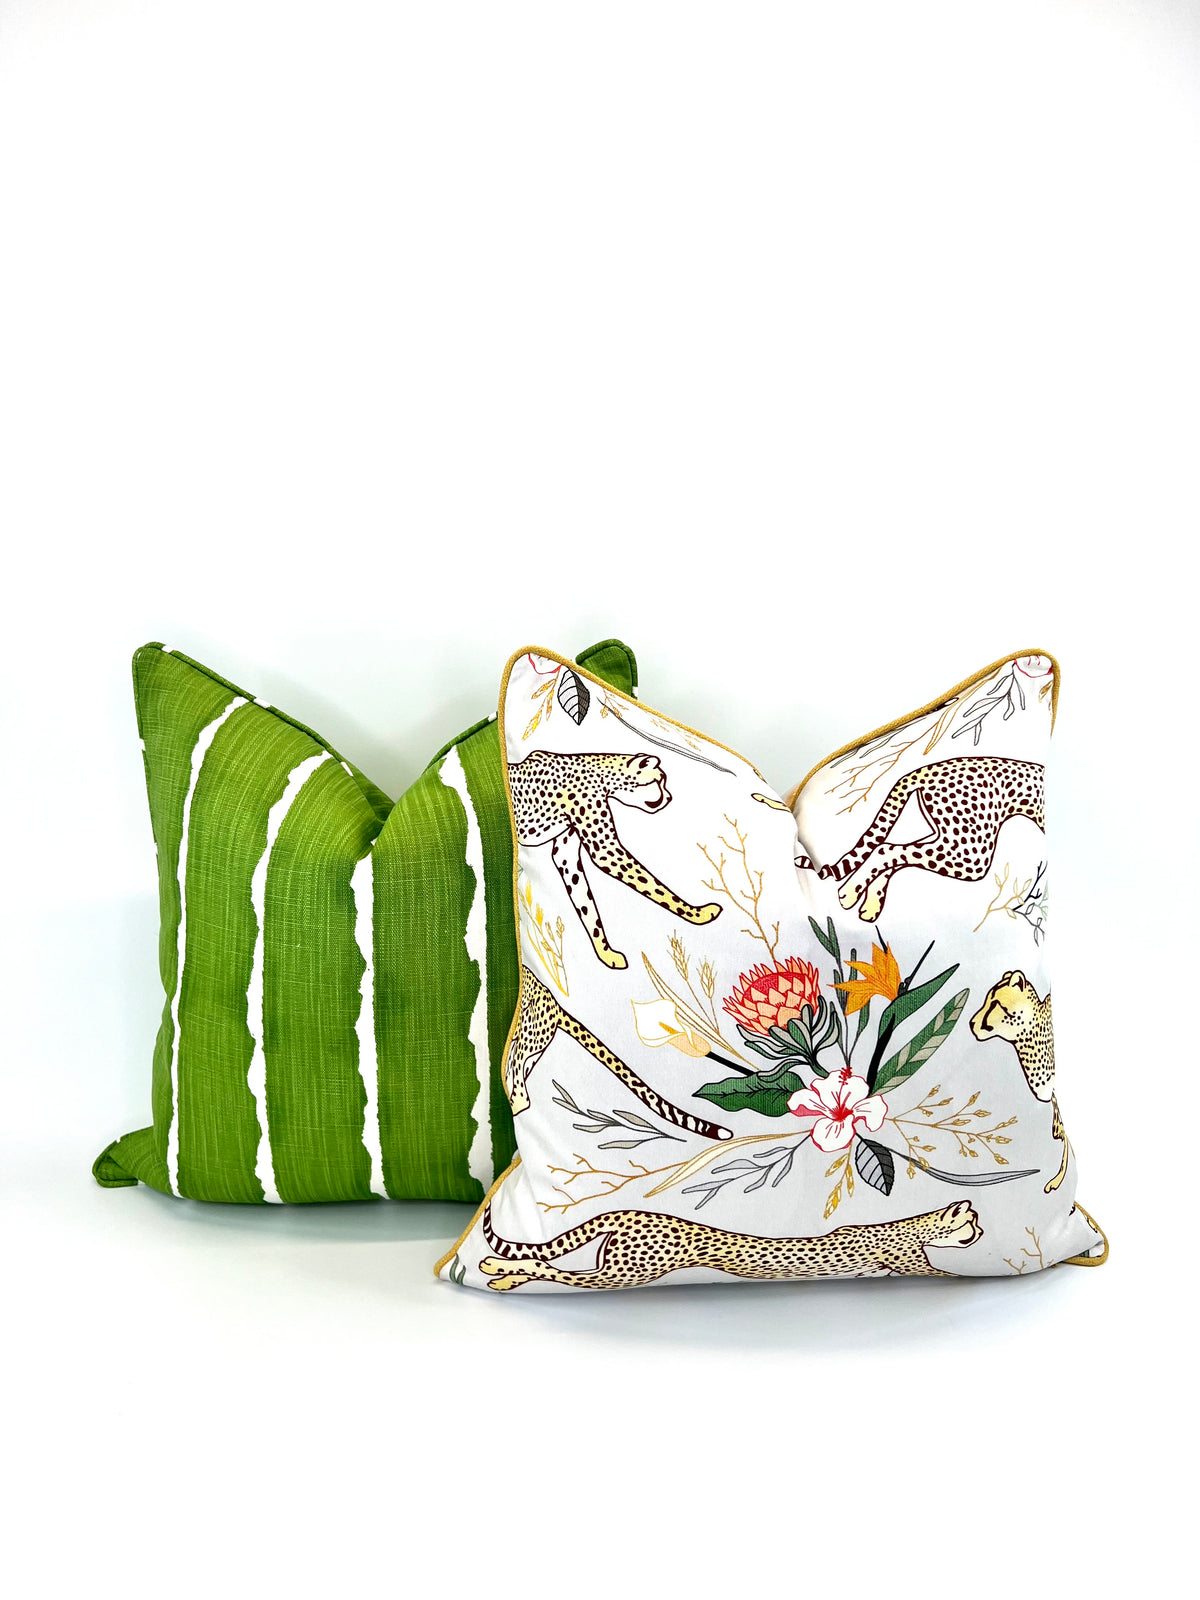 Decorative Pillow Cover in Scott Living Canal Bonsai Luxe Linen